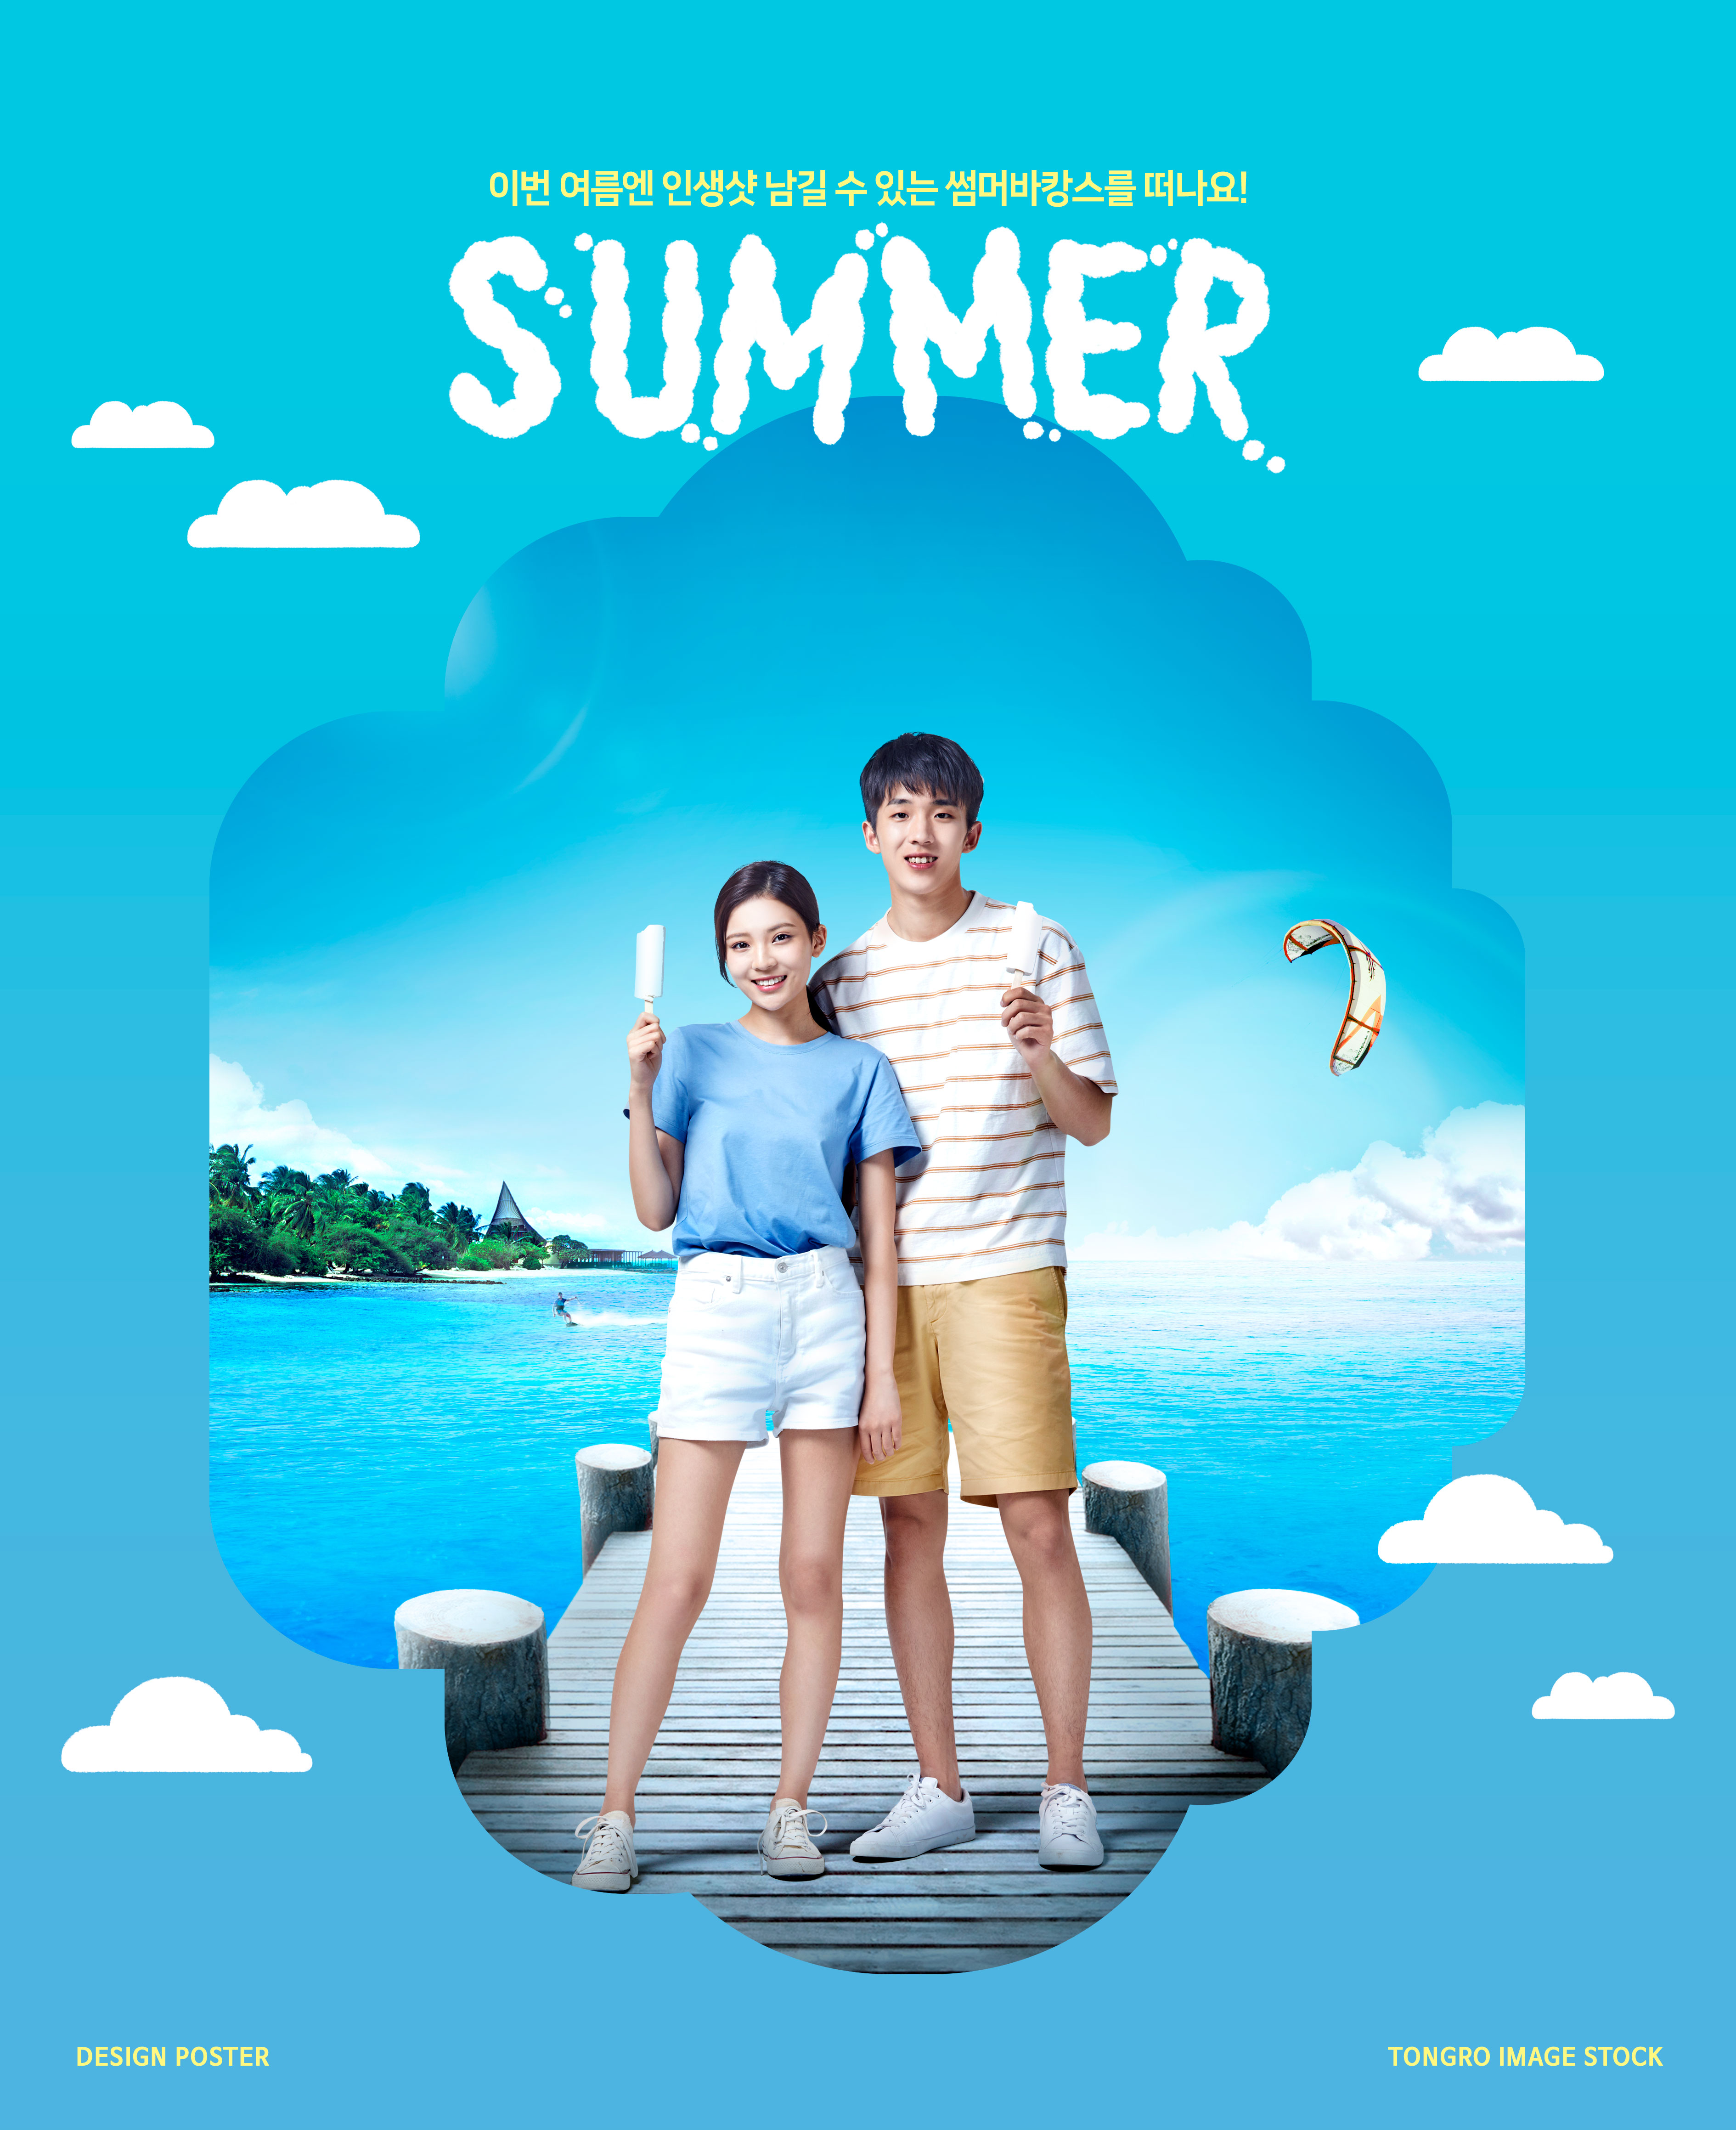 清凉夏季降暑主题海报设计模板[PSD]插图(4)